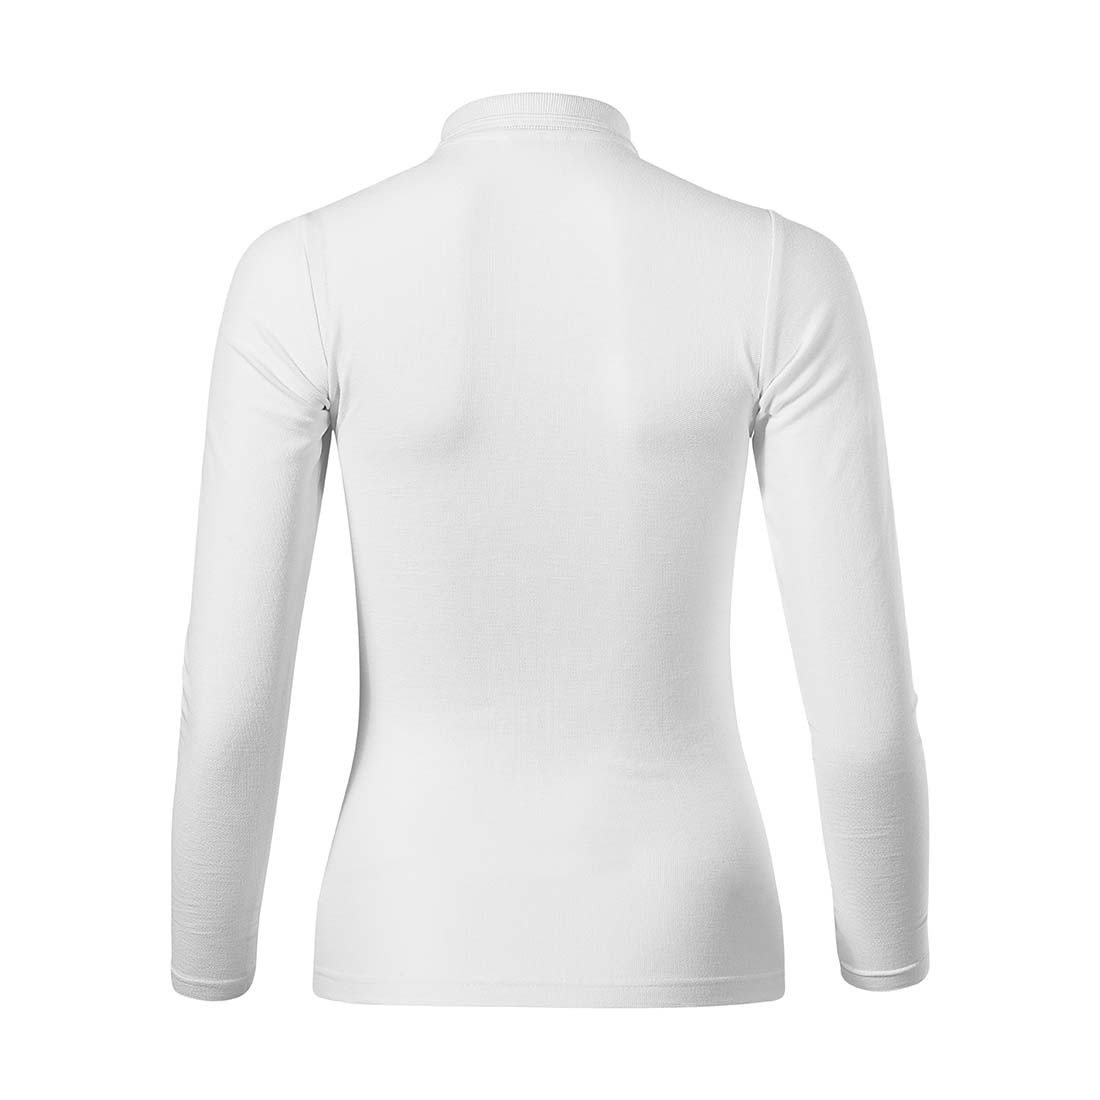 Women's Polo Shirt PIQUE POLO LS - Safetywear